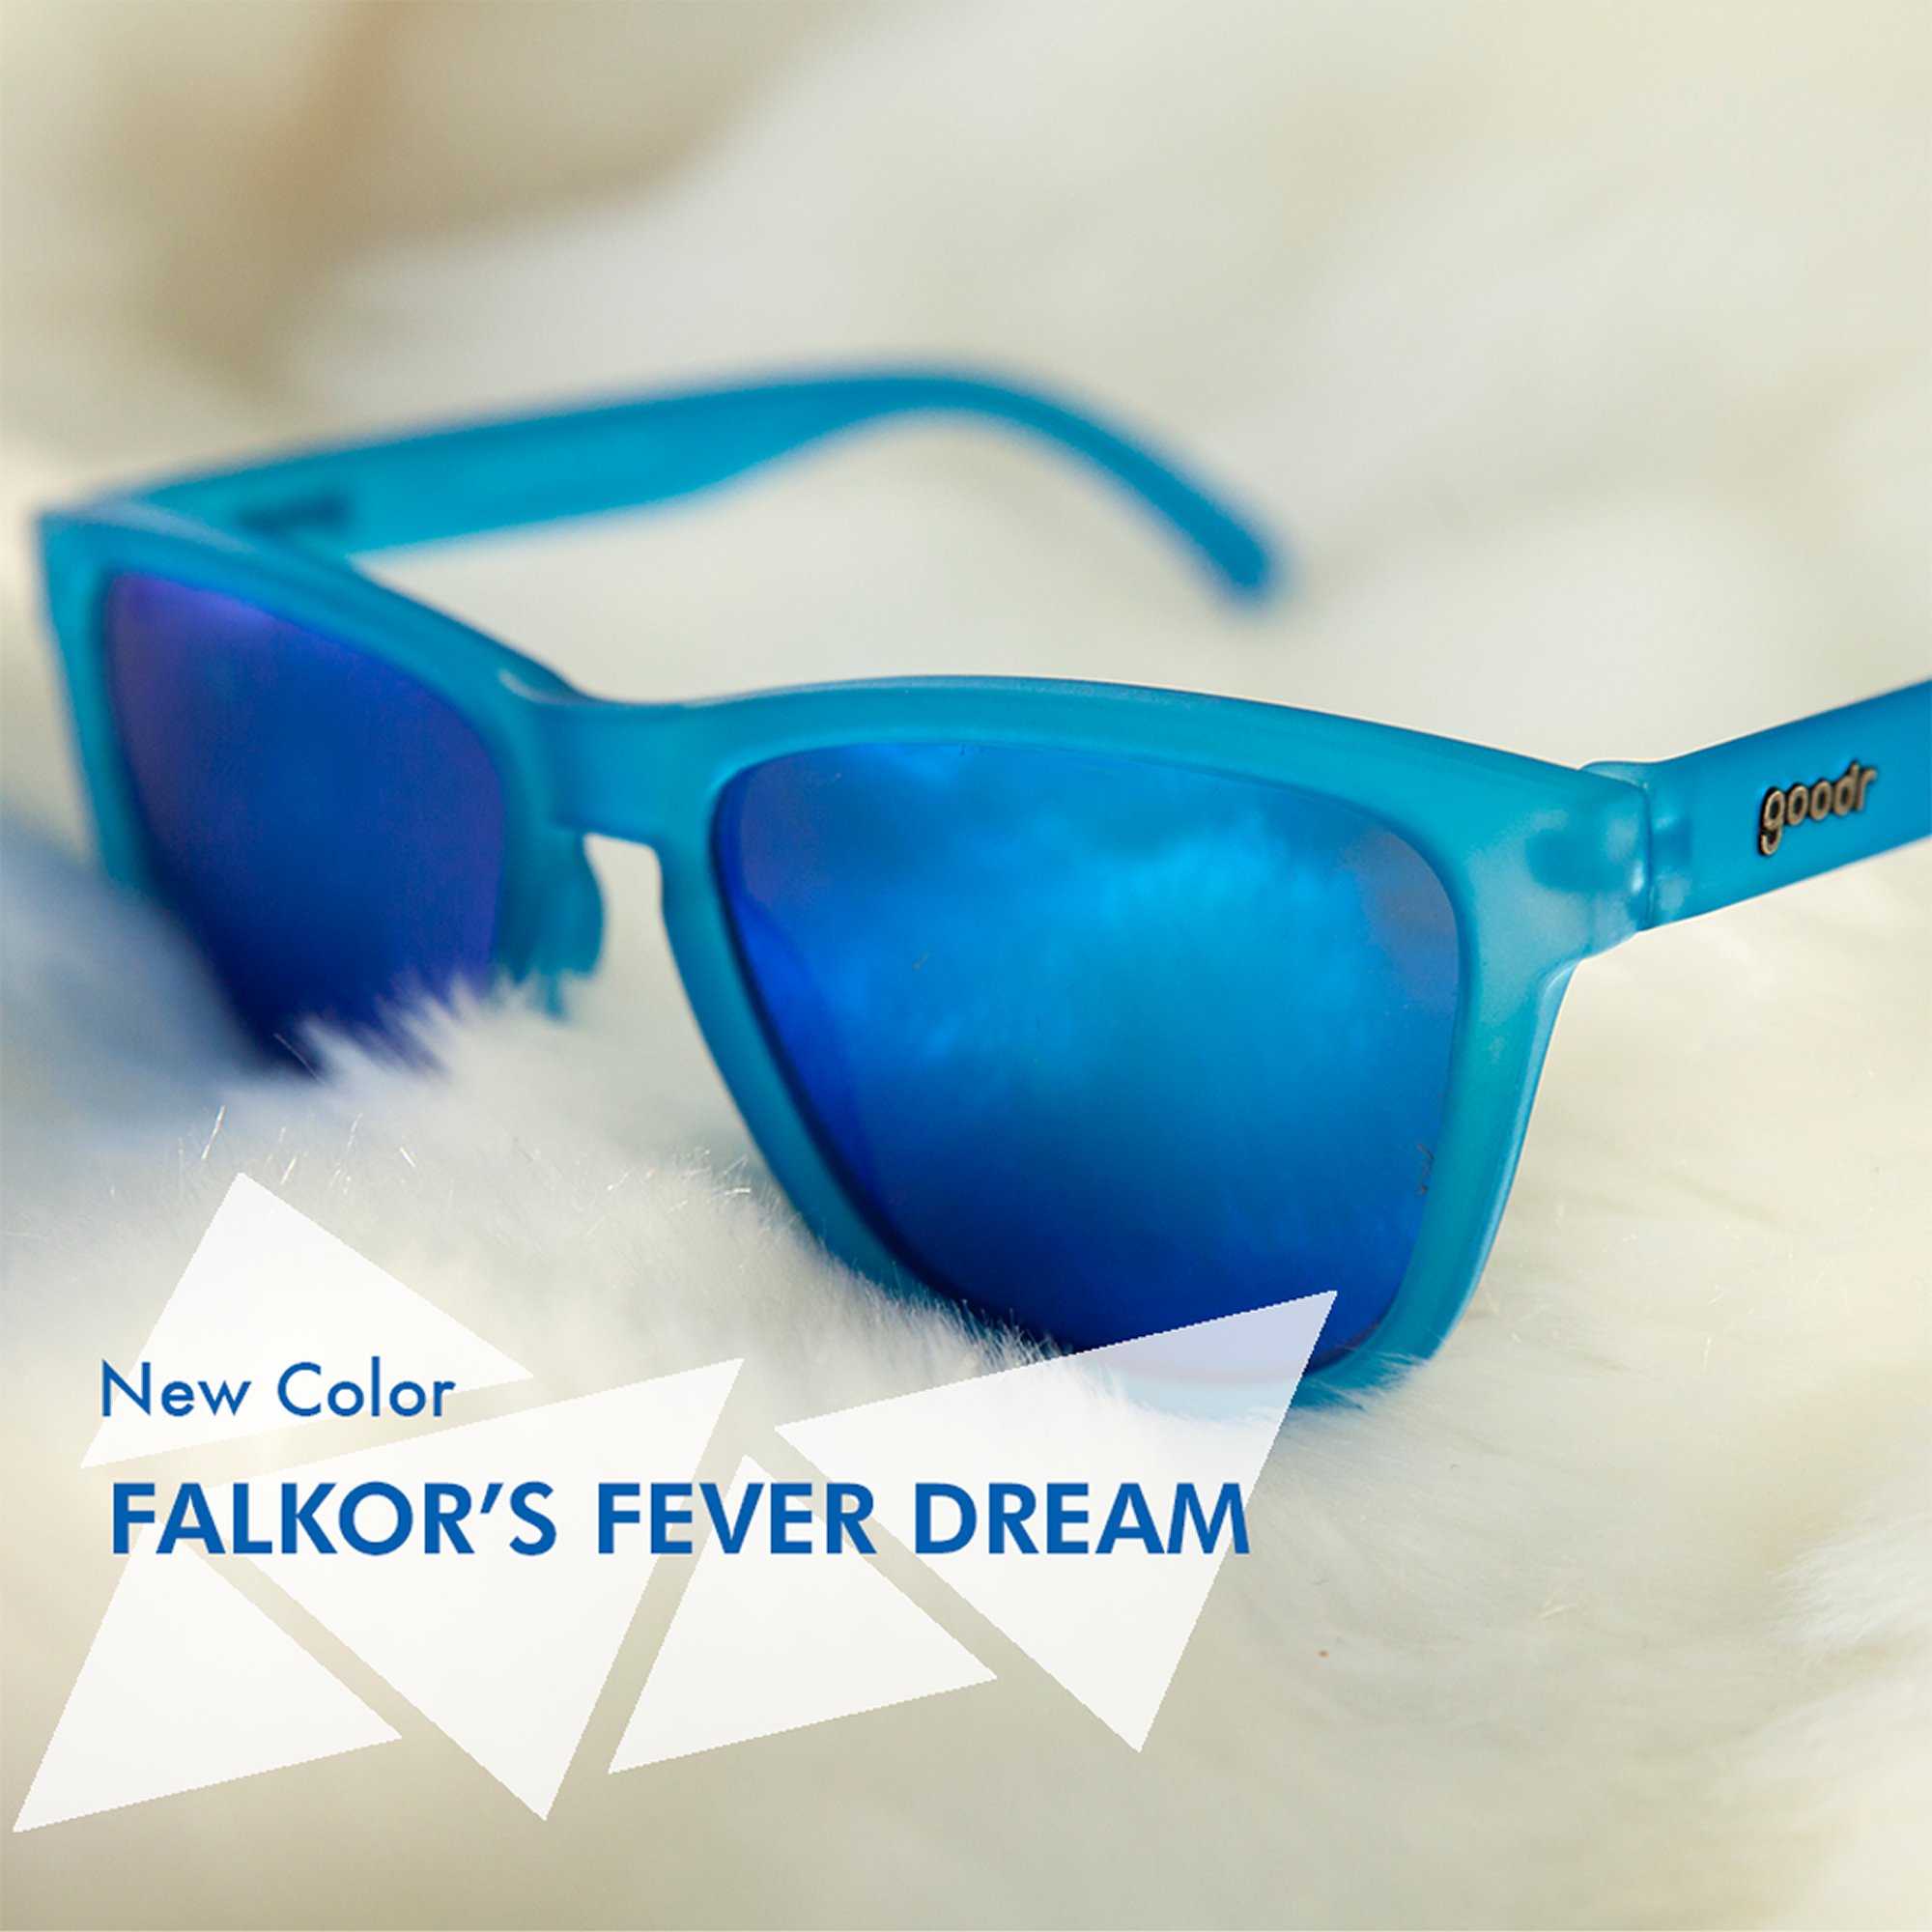 goodr Falkor’s Fever Dream